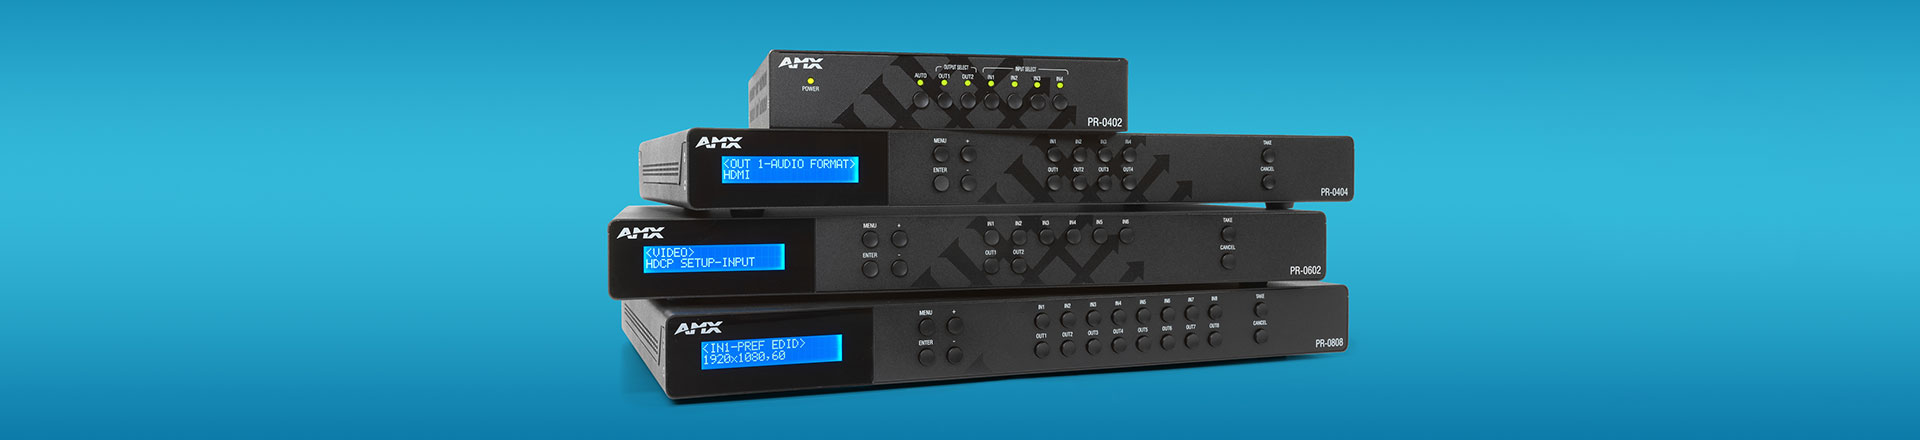 AVX Precis PR i VPX sprawdzi się w dystrybucji wideo dla małych i średnich instalacji AV